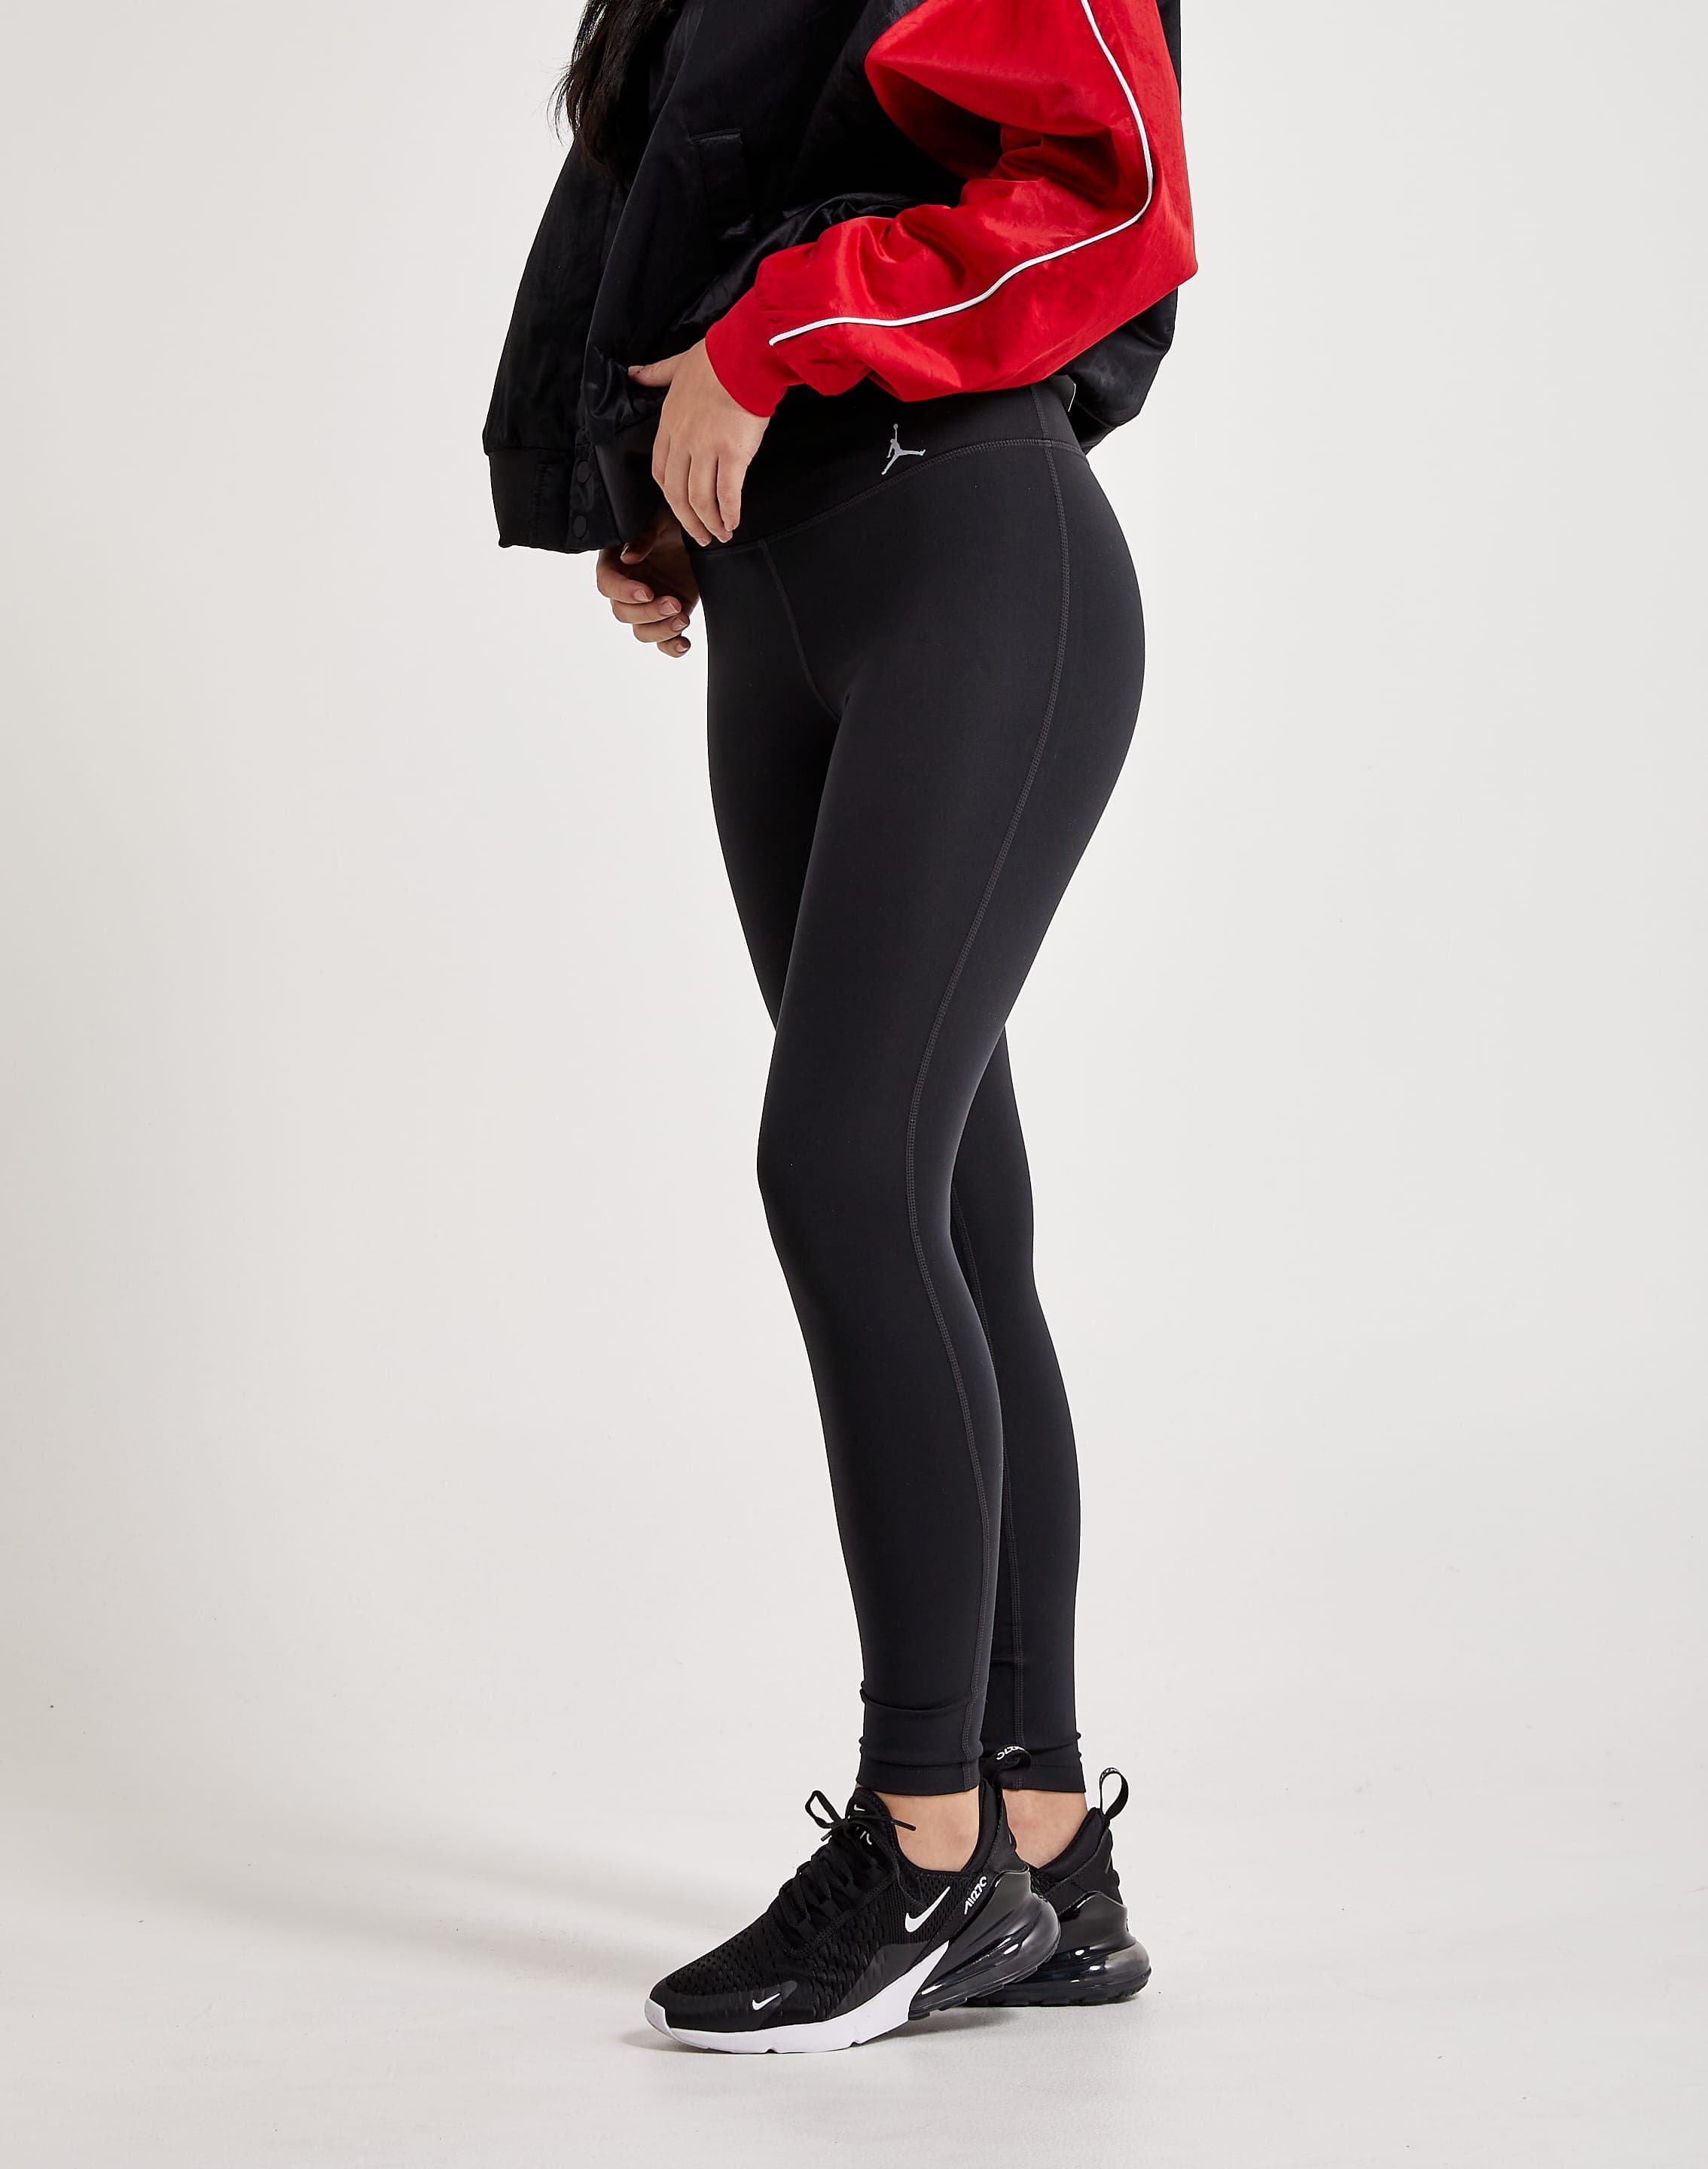 Jordan Sport Women's Graphic Fleece Pants.